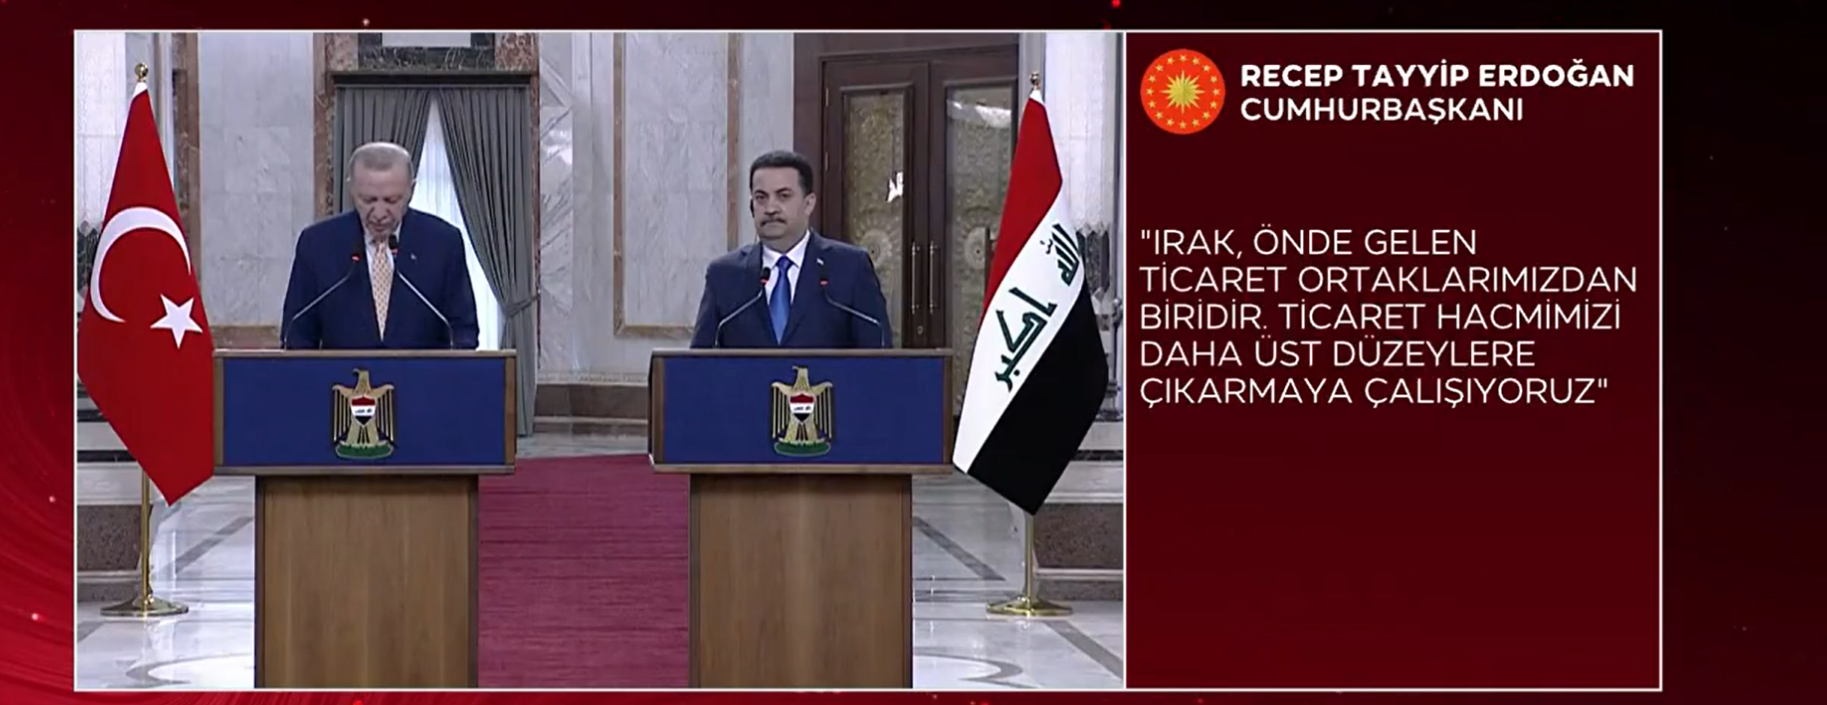 Video haber: Recep Tayyip Erdoğan Irak'ta konuşma yaptı